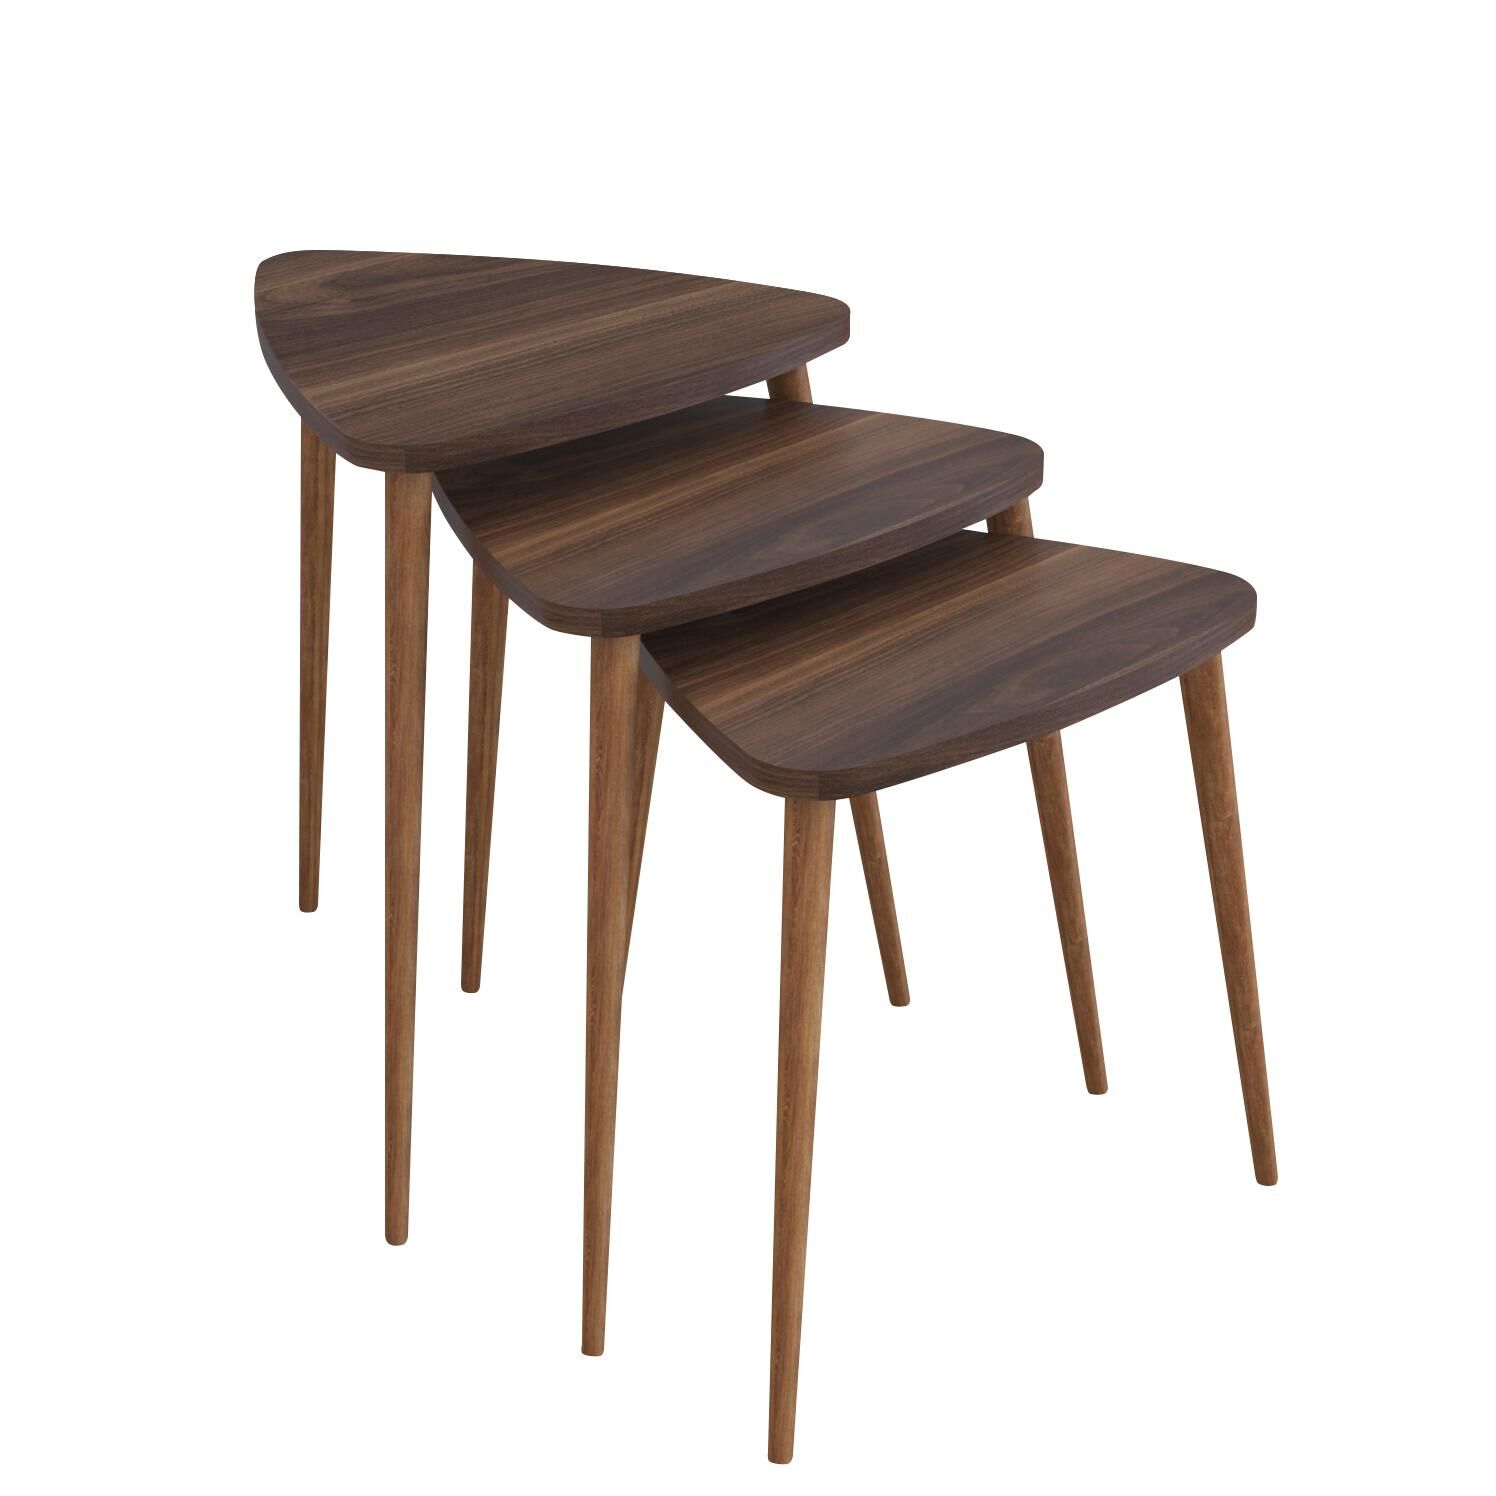 ABIDEMI Side Table Walnut Chipboard/Wood 35x52/35x47/35x42cm Set 3Pcs